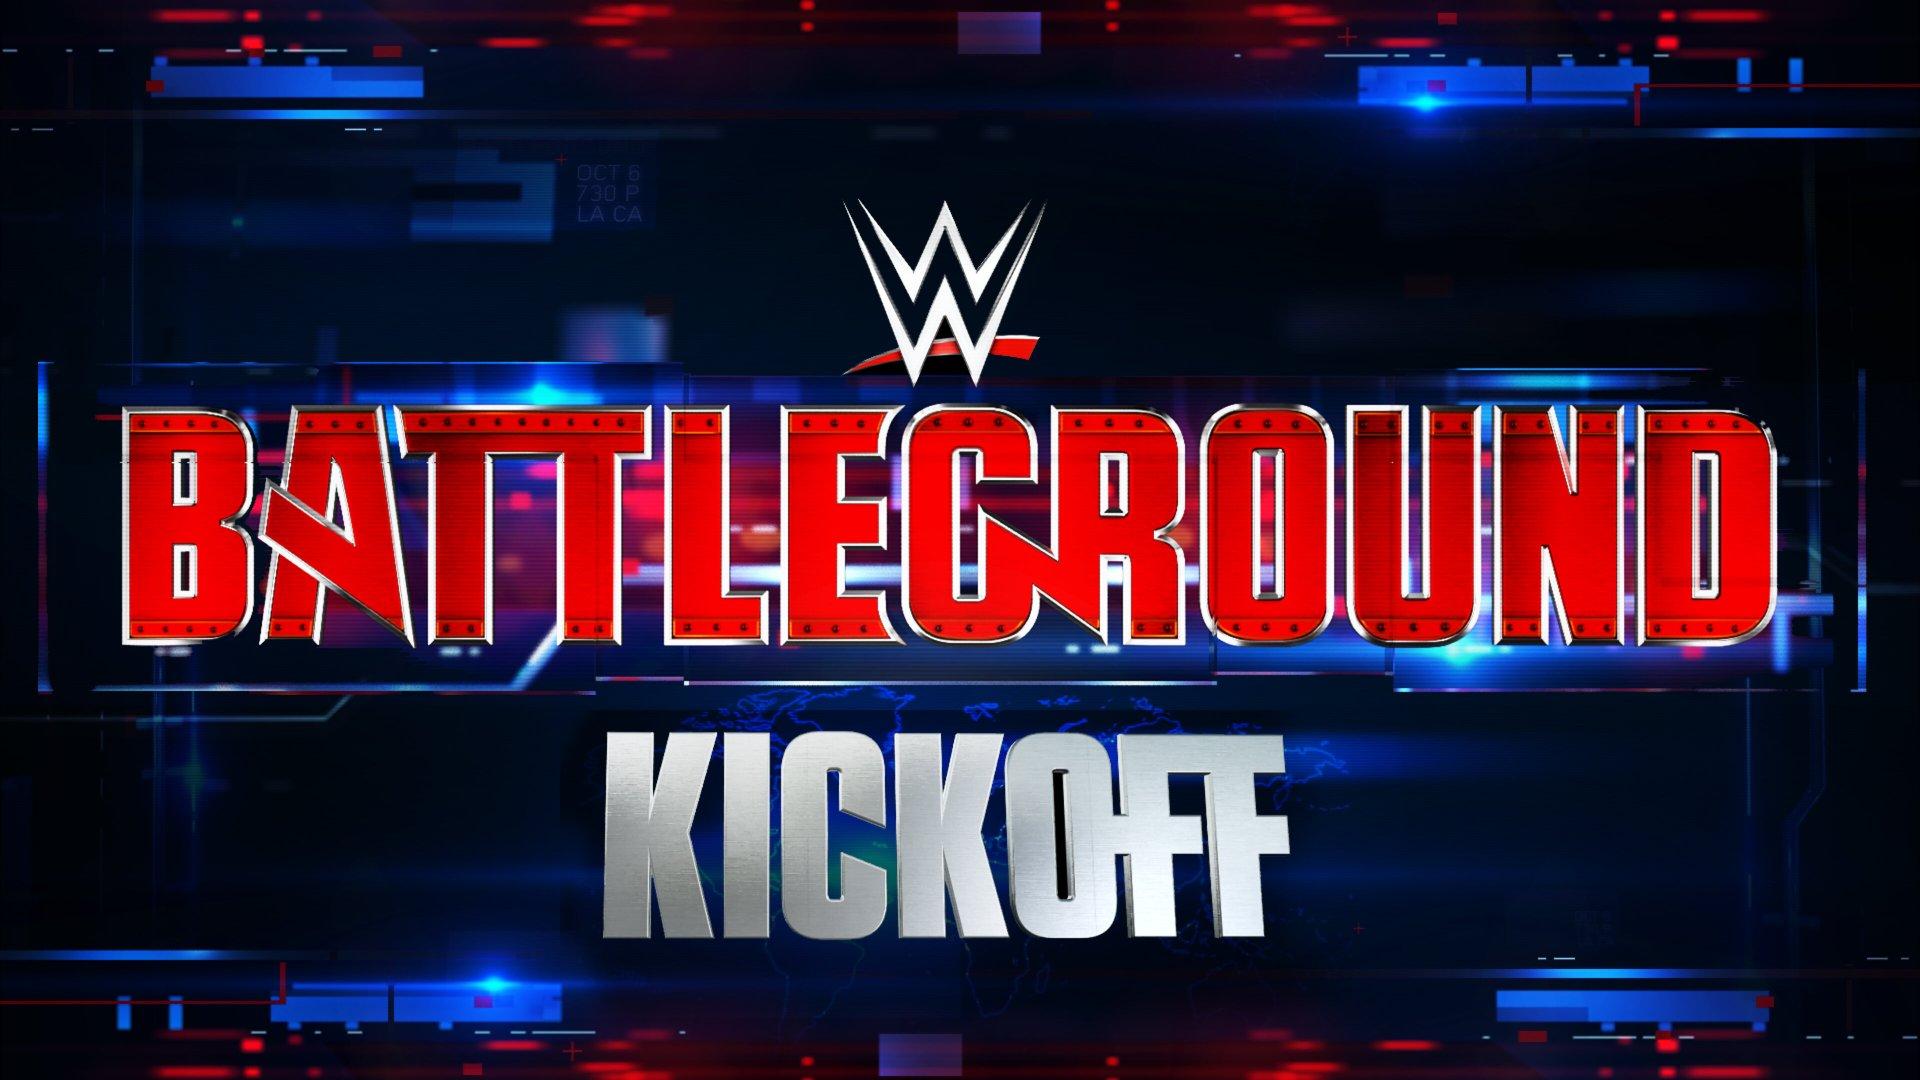 WWE Battleground 2015 Kickoff